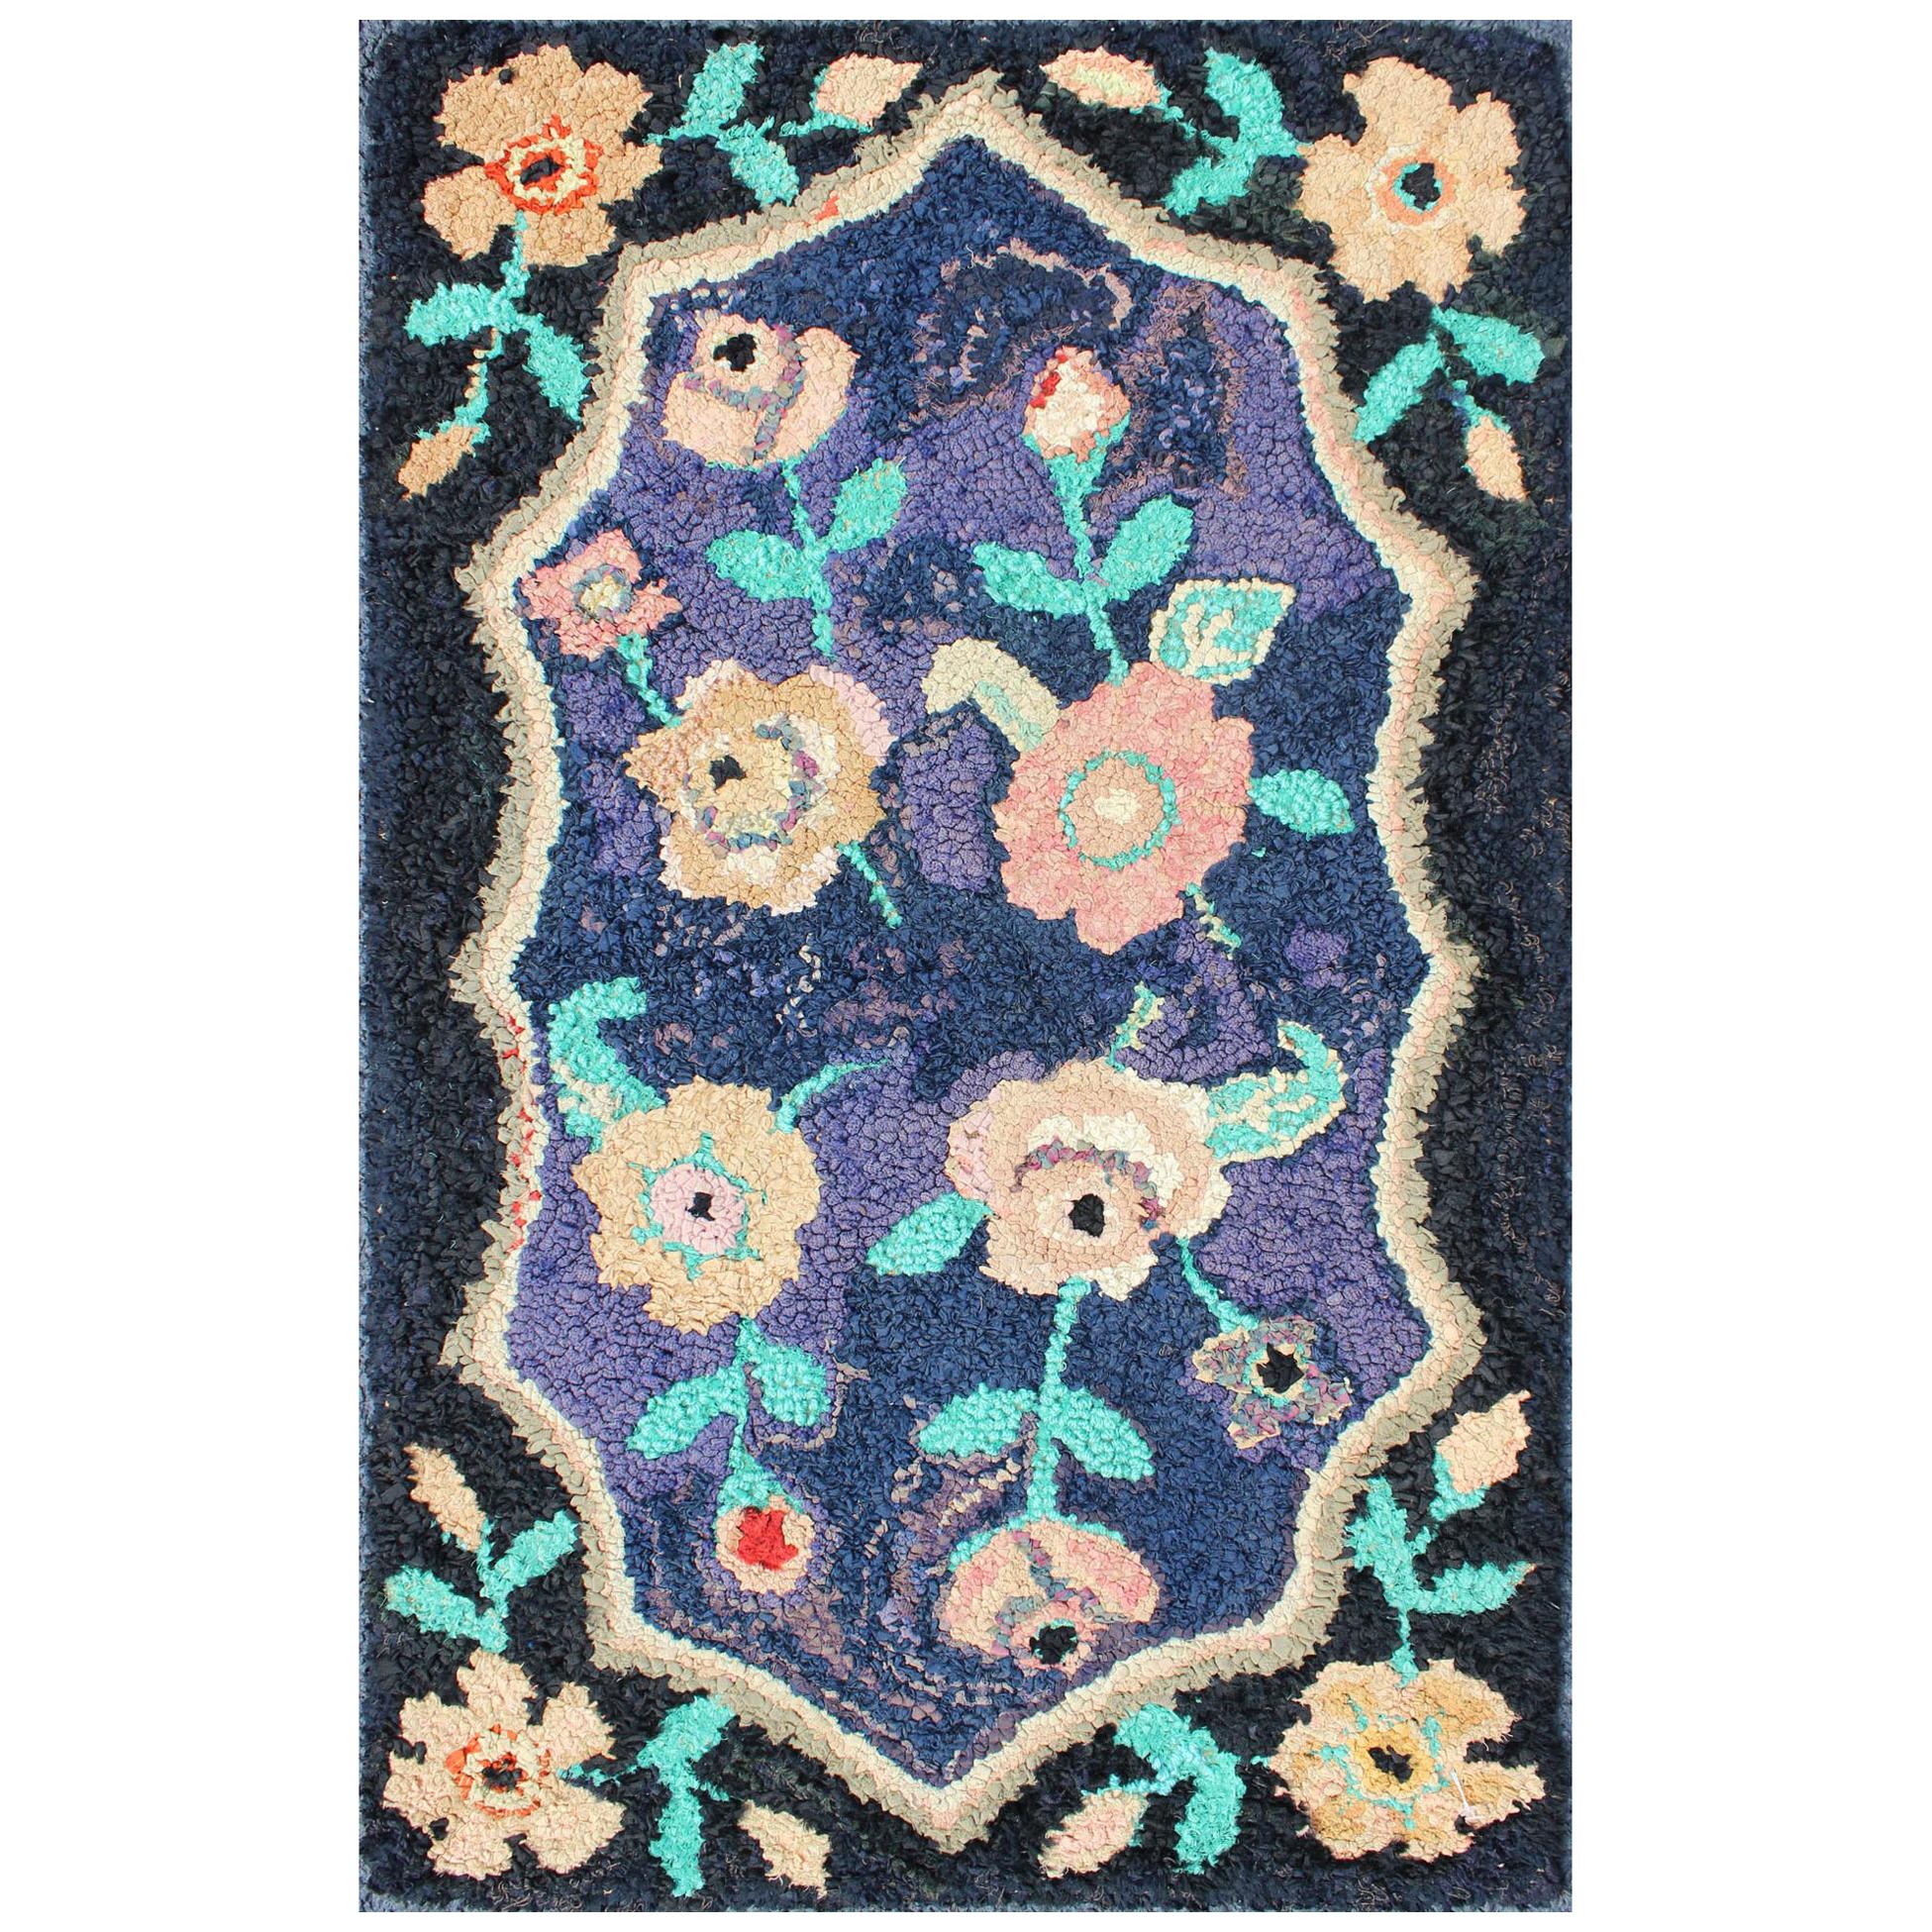 Amerikanischer amerikanischer Kapuzenteppich mit Blumenmuster und Medaillon auf Lila/Blau, Schwarz